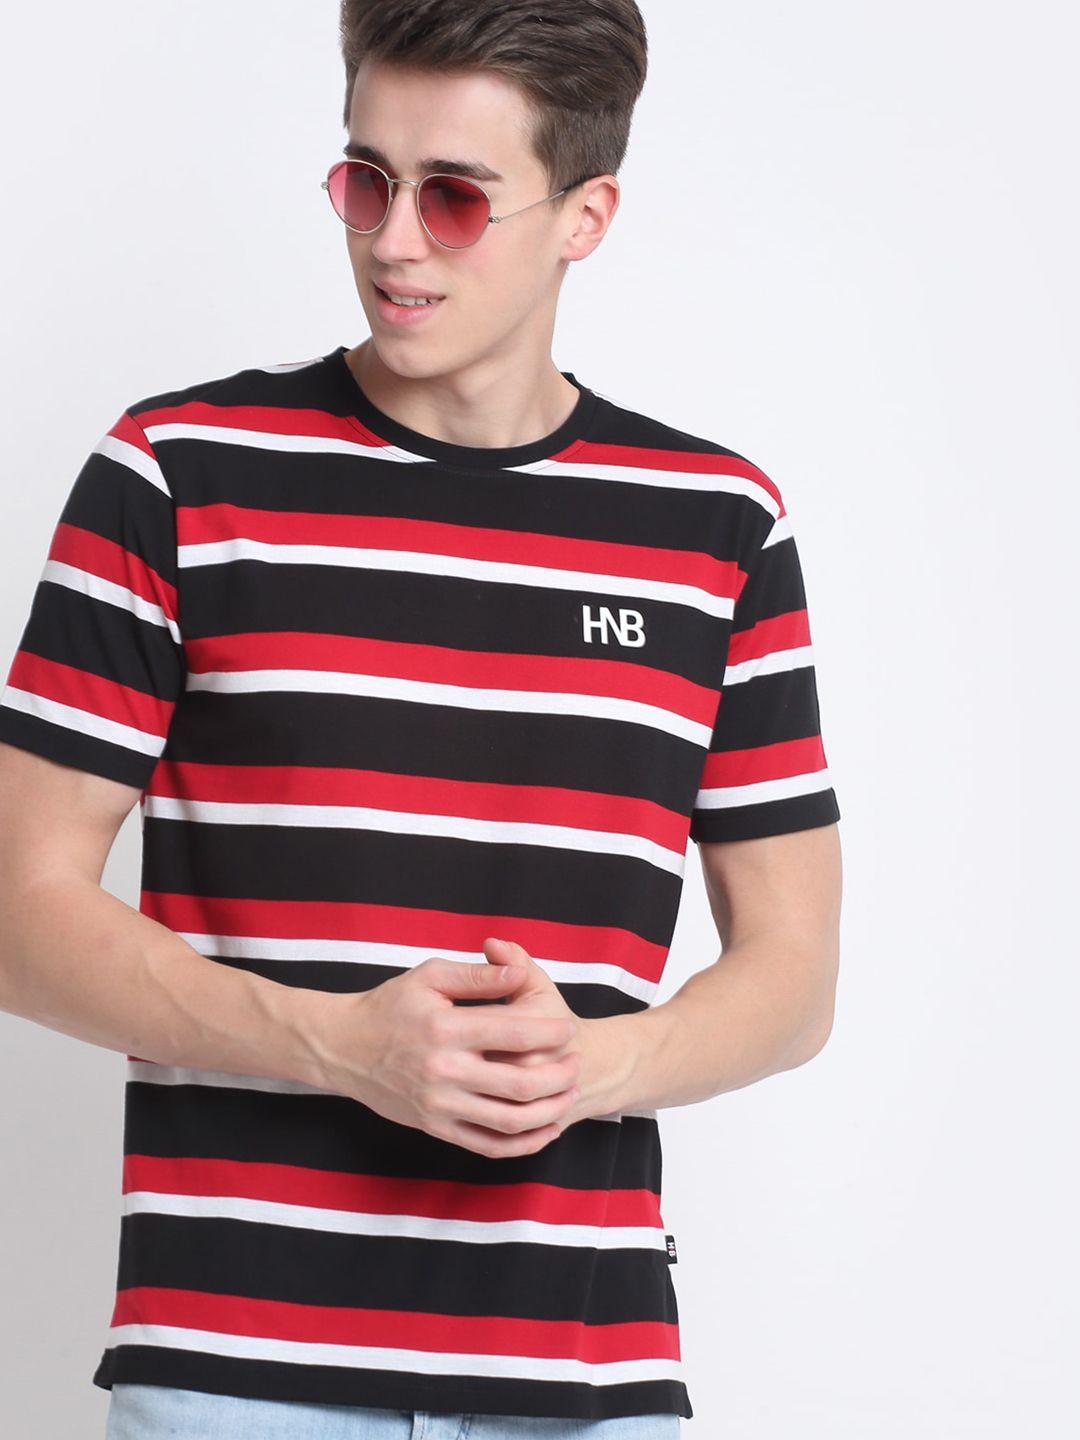 harbor n bay men red striped applique t-shirt